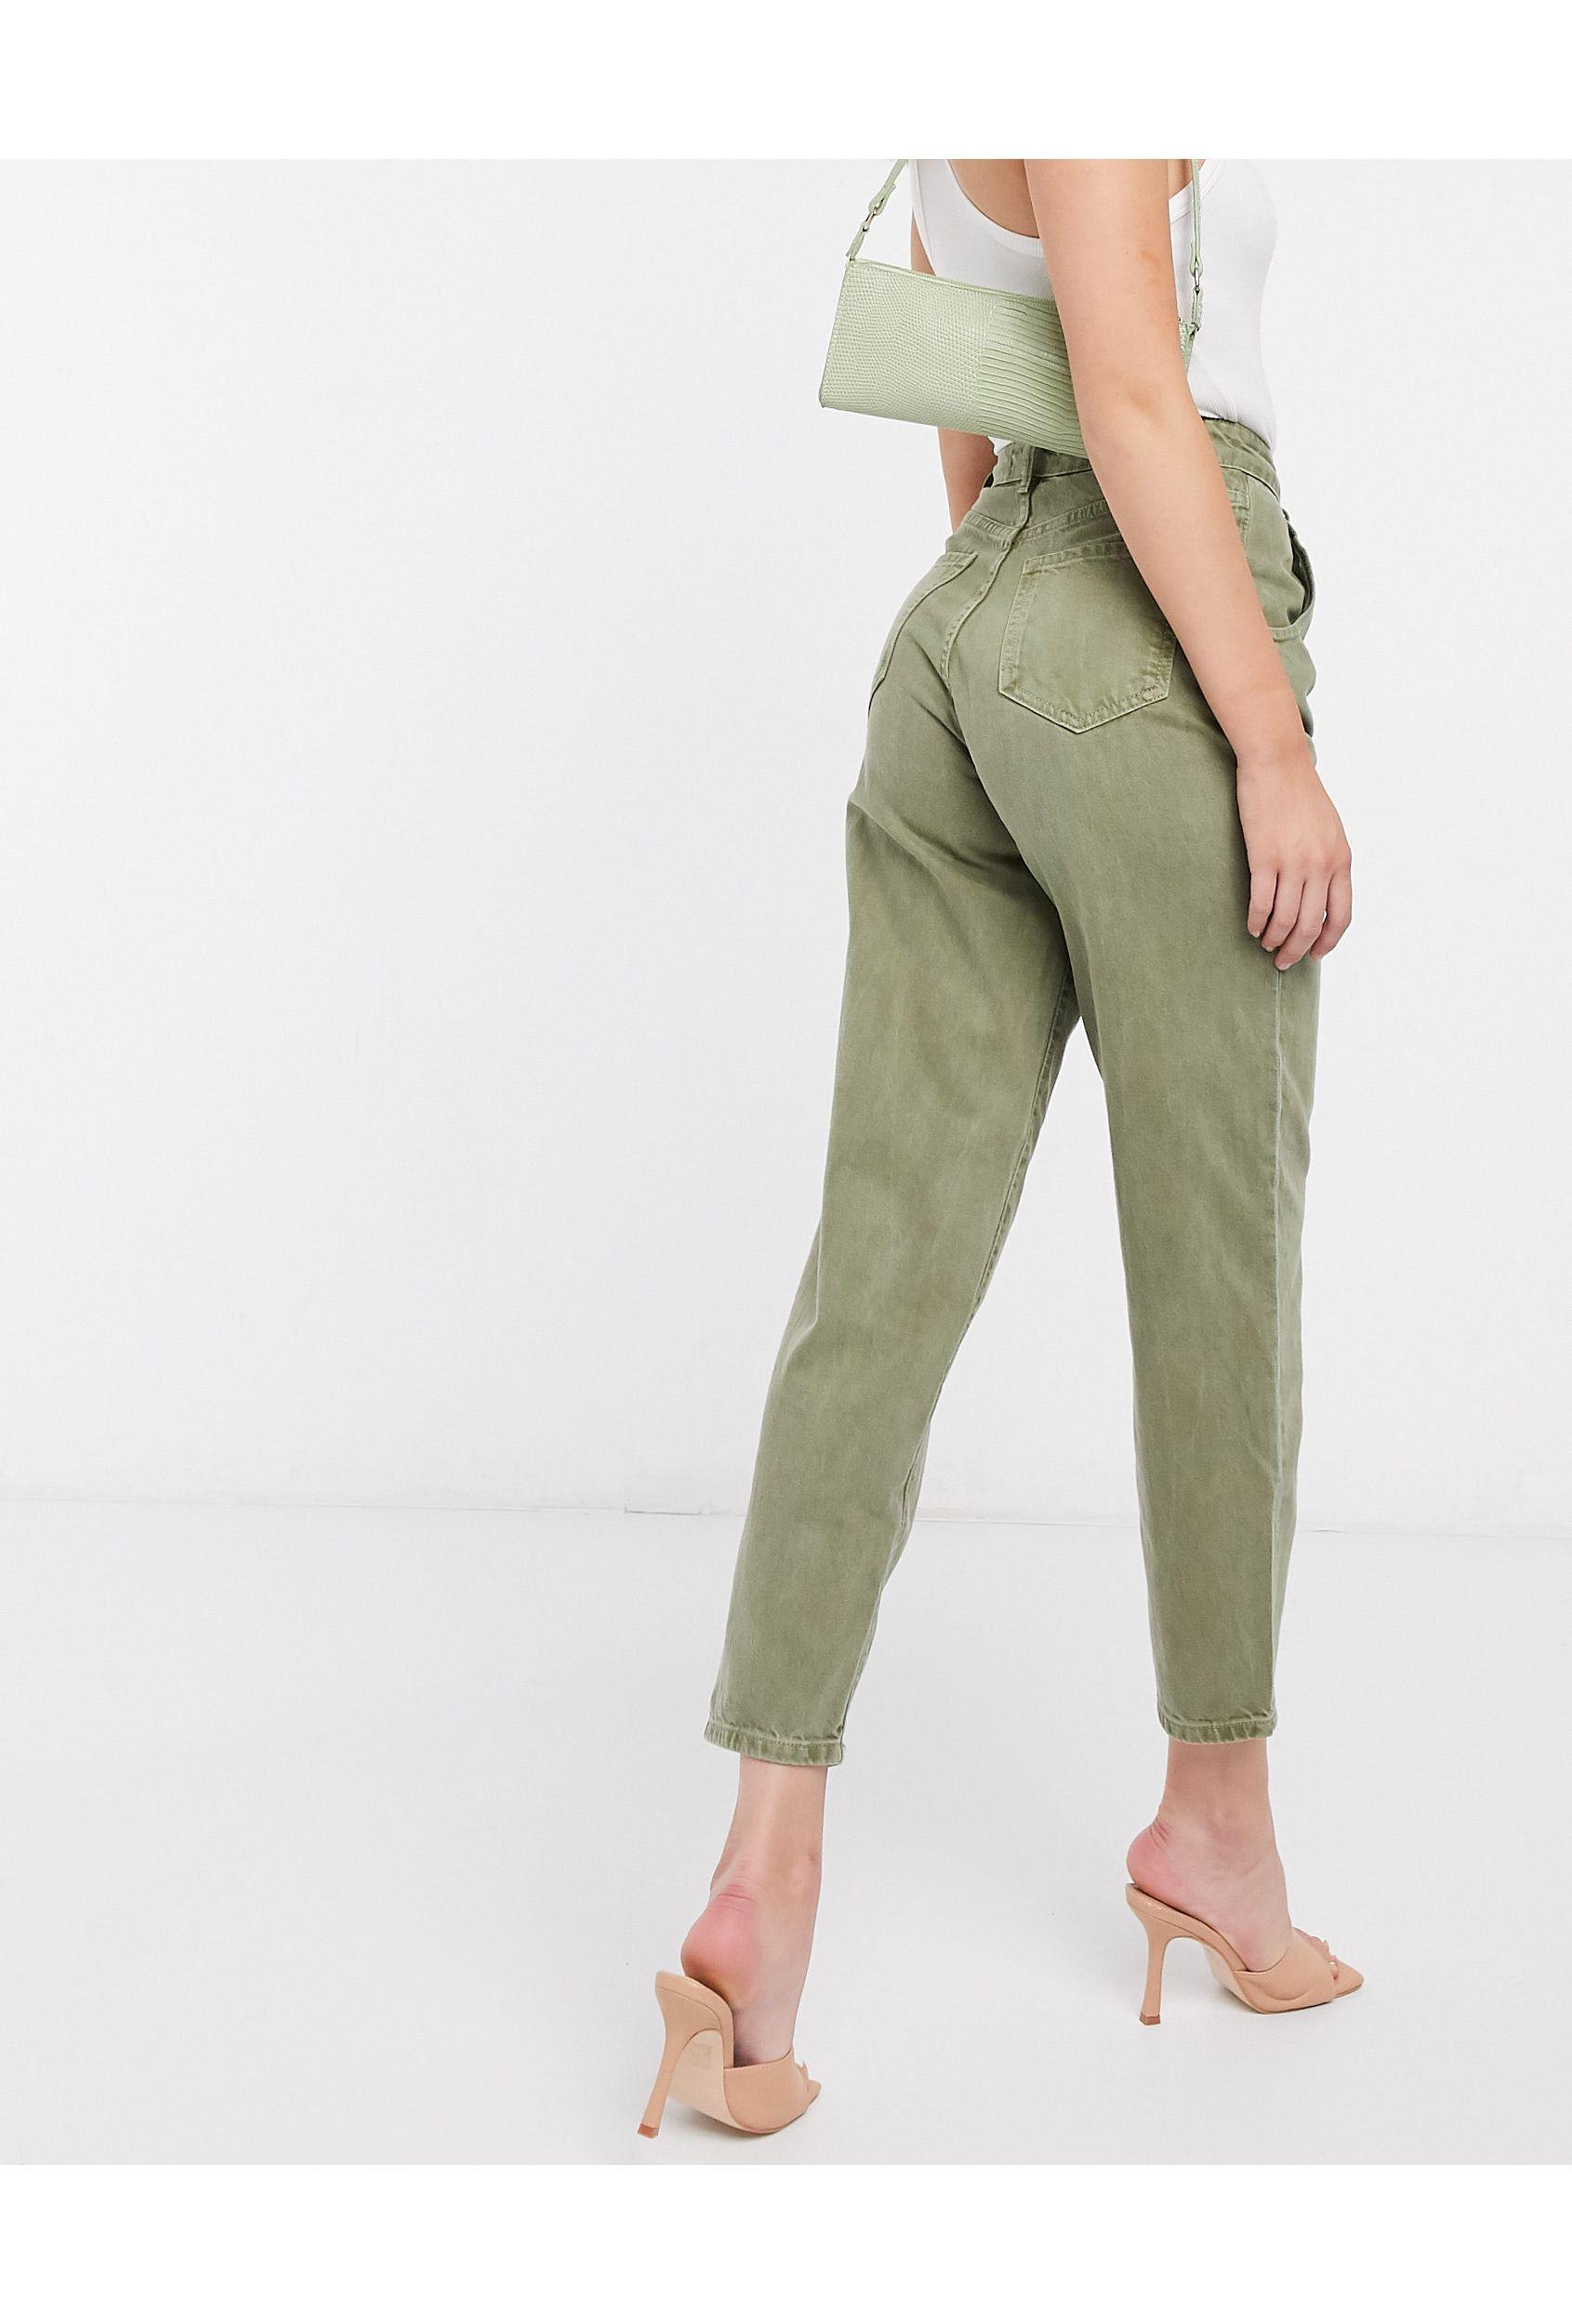 Mango Denim Pleat Top Slouchy Jeans in Green - Lyst